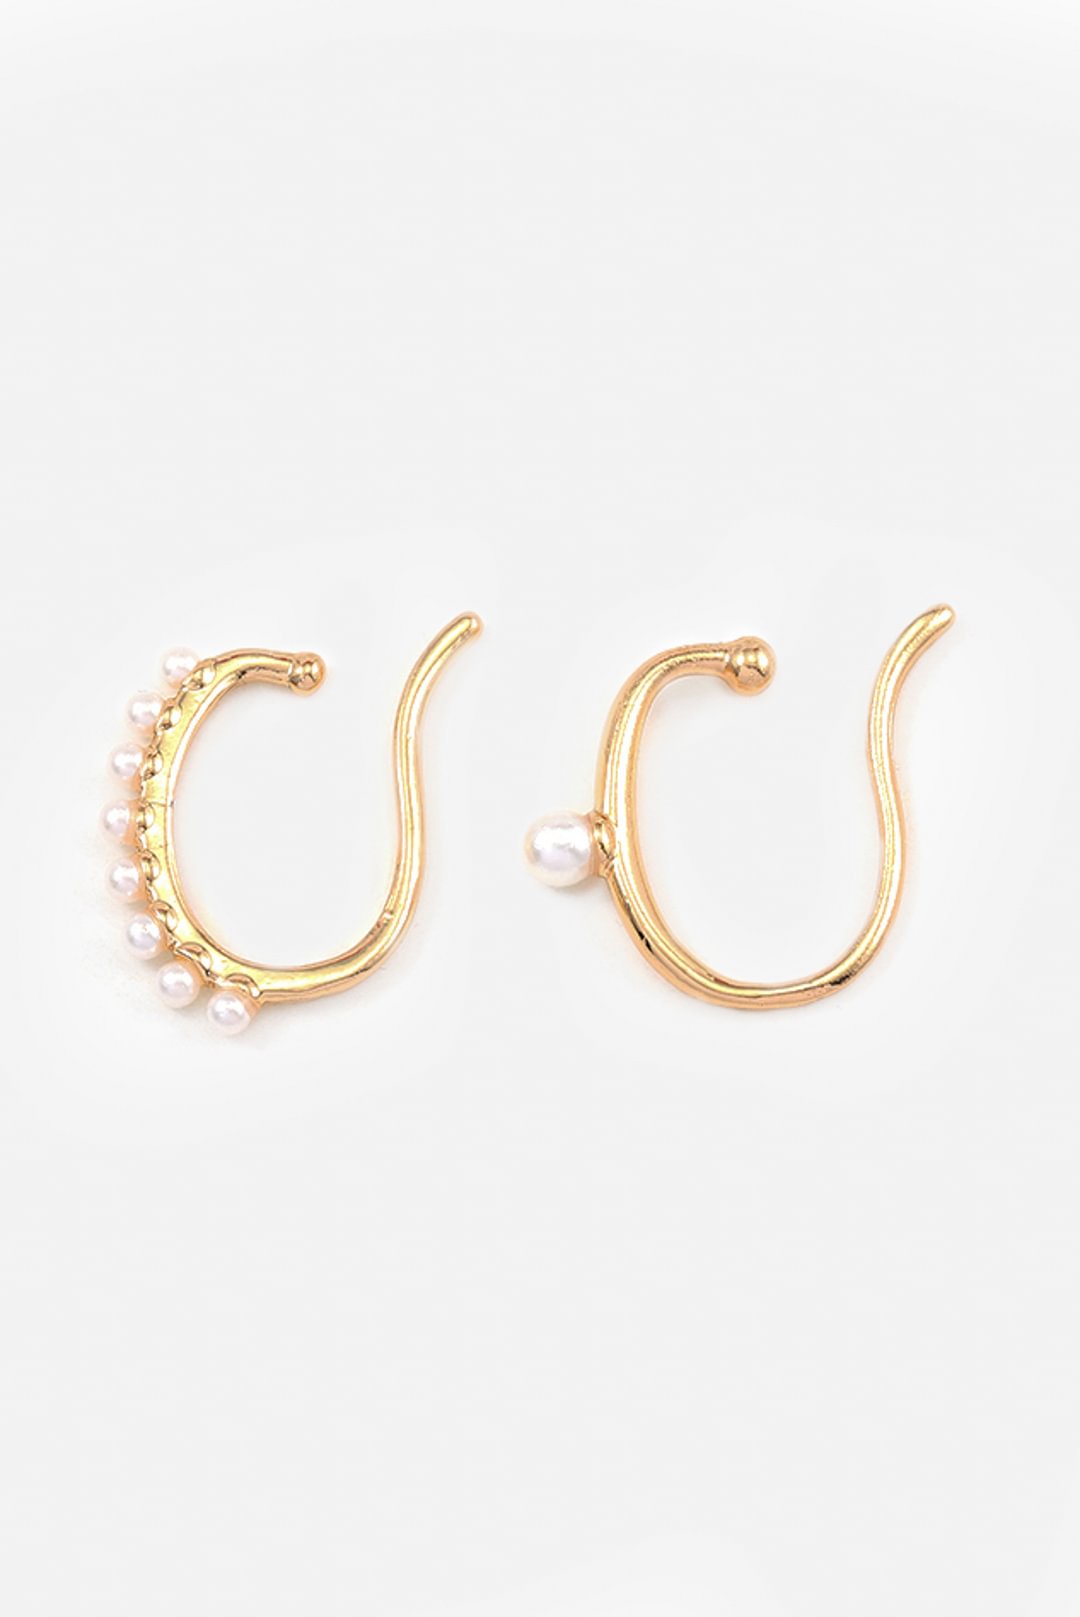 FashionV-FashionV  C-shaped Pearl Earrings Set